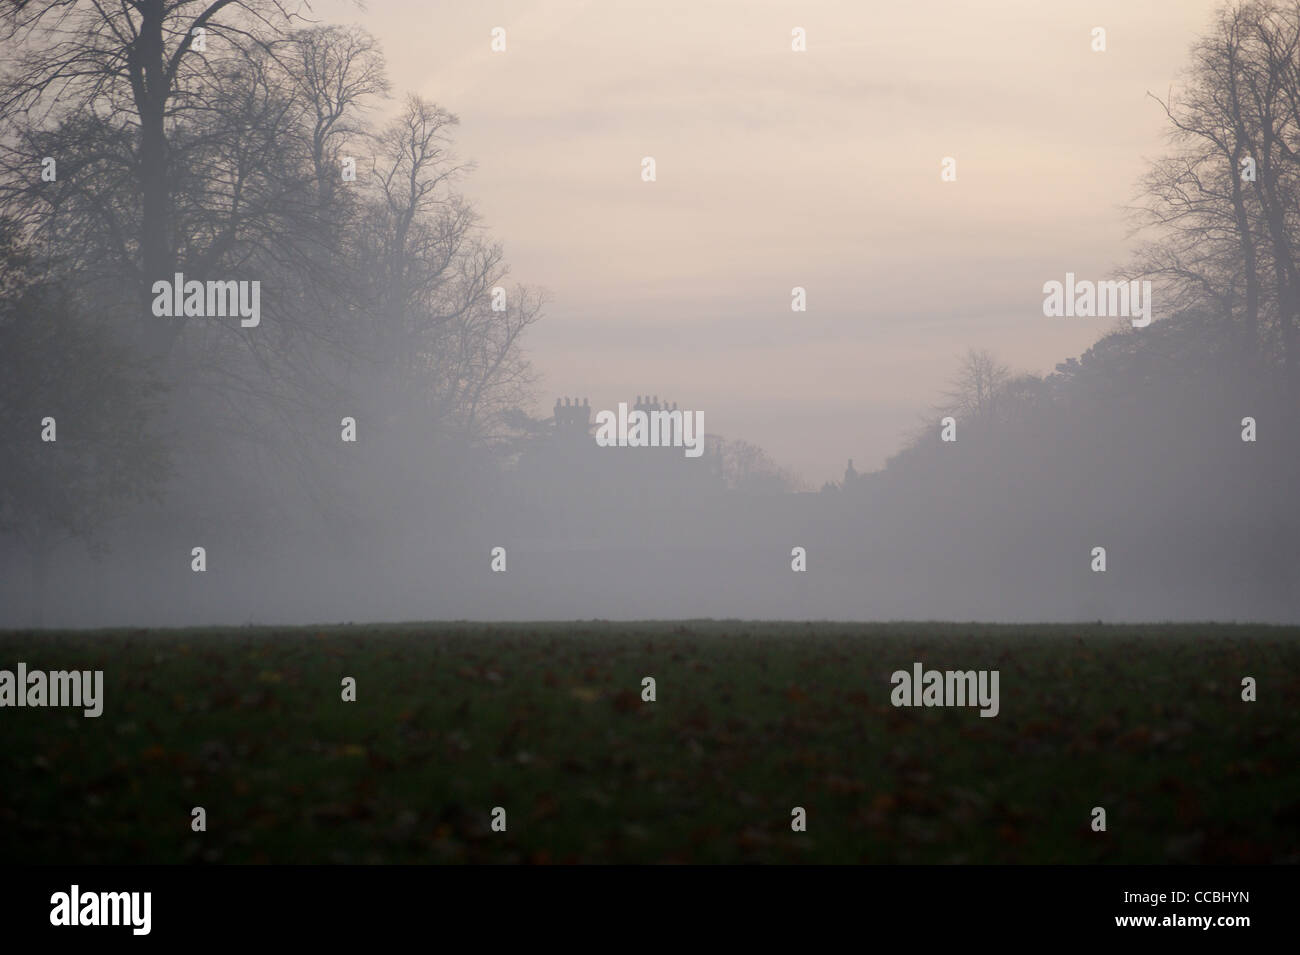 Jakobinischen Villa vierzig Hall in Abend Nebel, London Borough of Enfield, Middlesex, London, England, über nebligen Felder gesehen Stockfoto